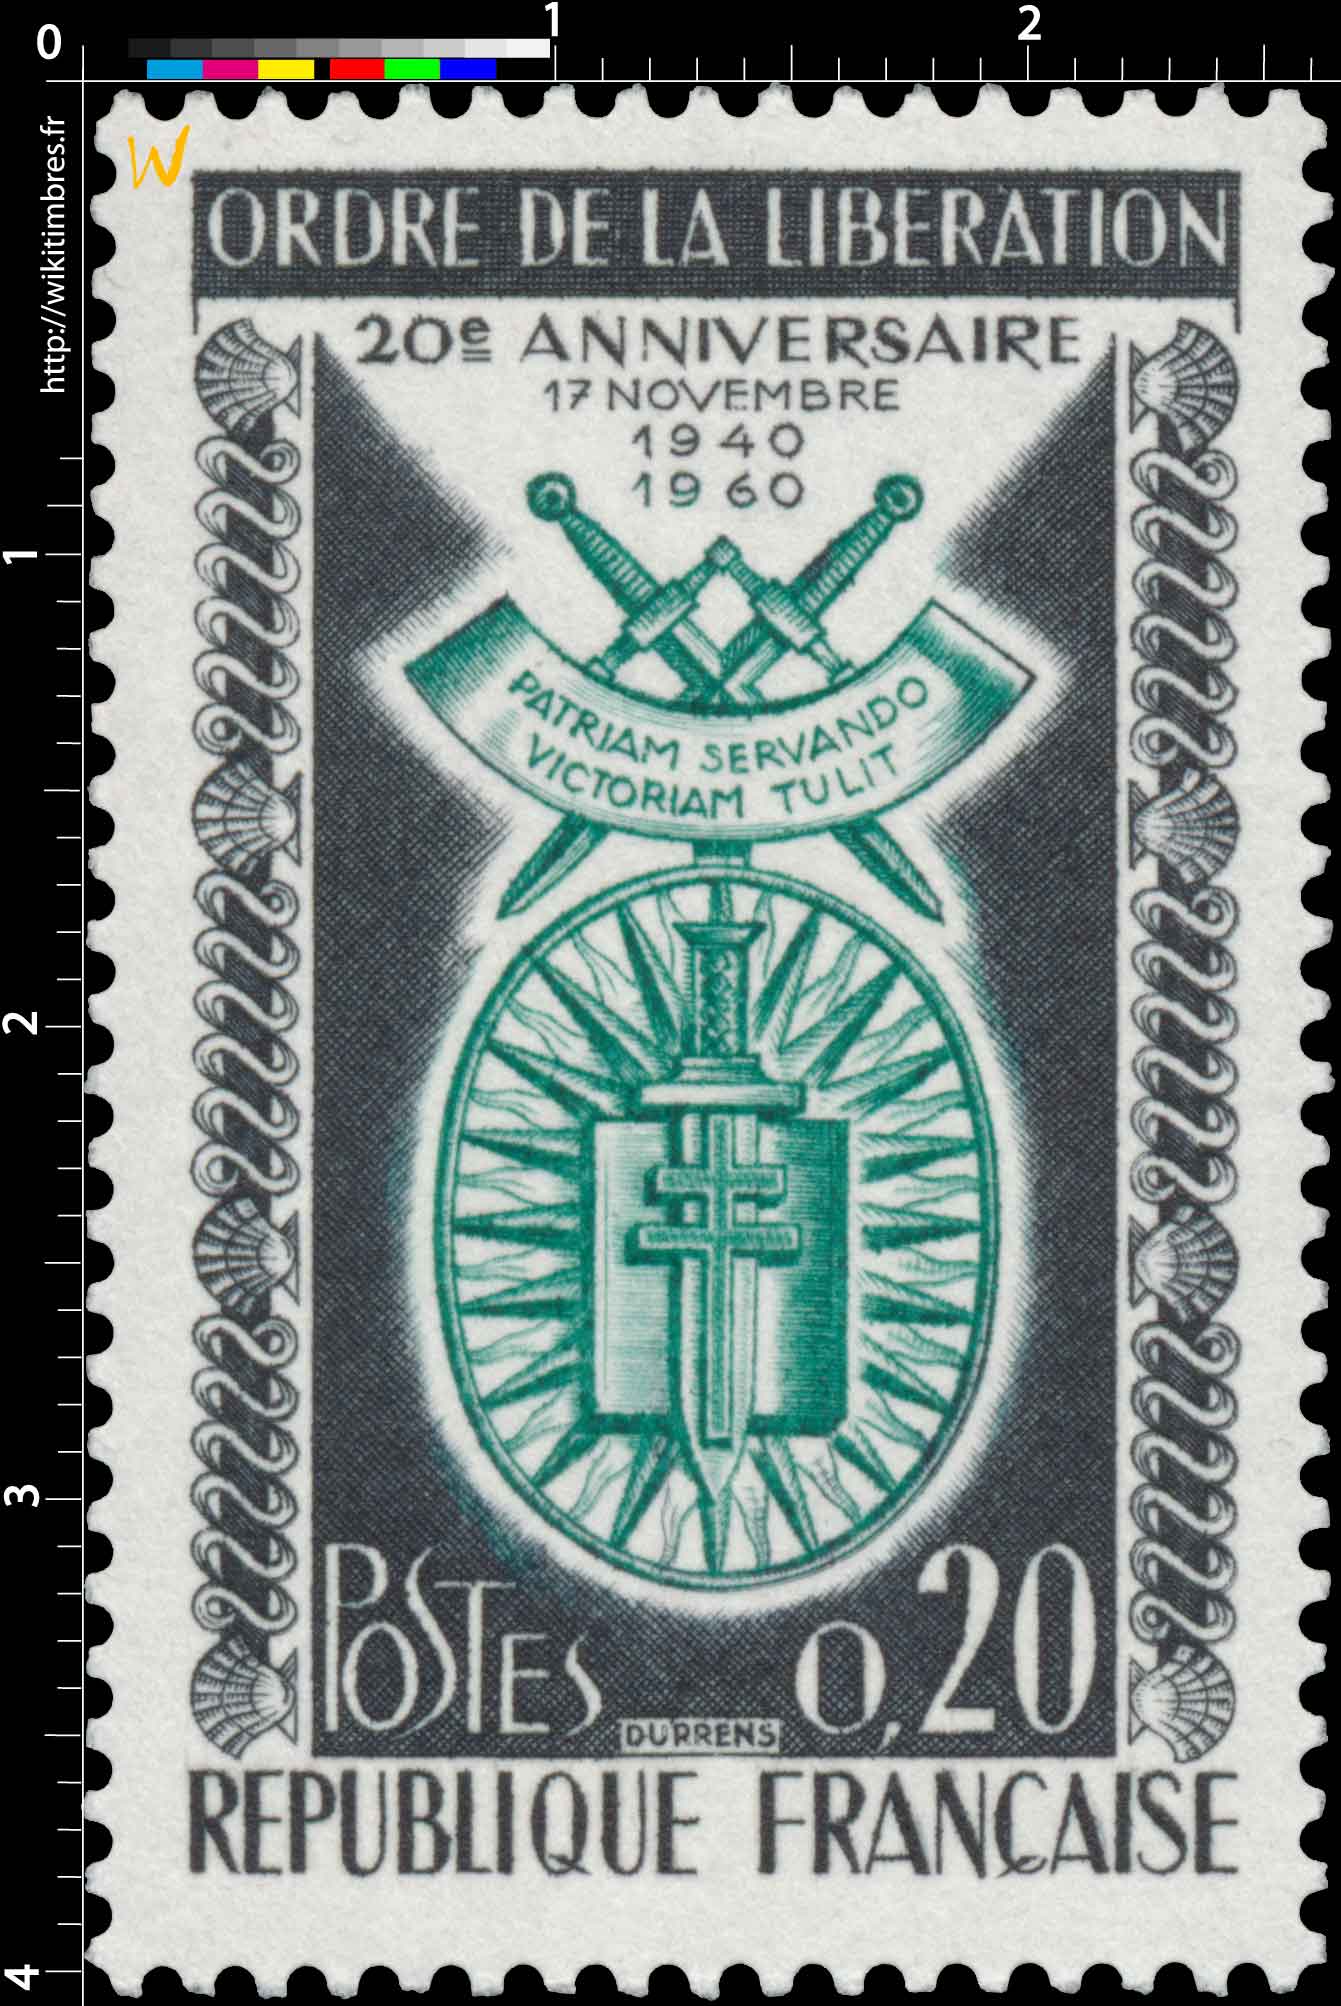 ORDRE DE LA LIBÉRATION 20e ANNIVERSAIRE 17 NOVEMBRE 1940-1960 PATRIAM SERVANDO VICTORIAM TULIT